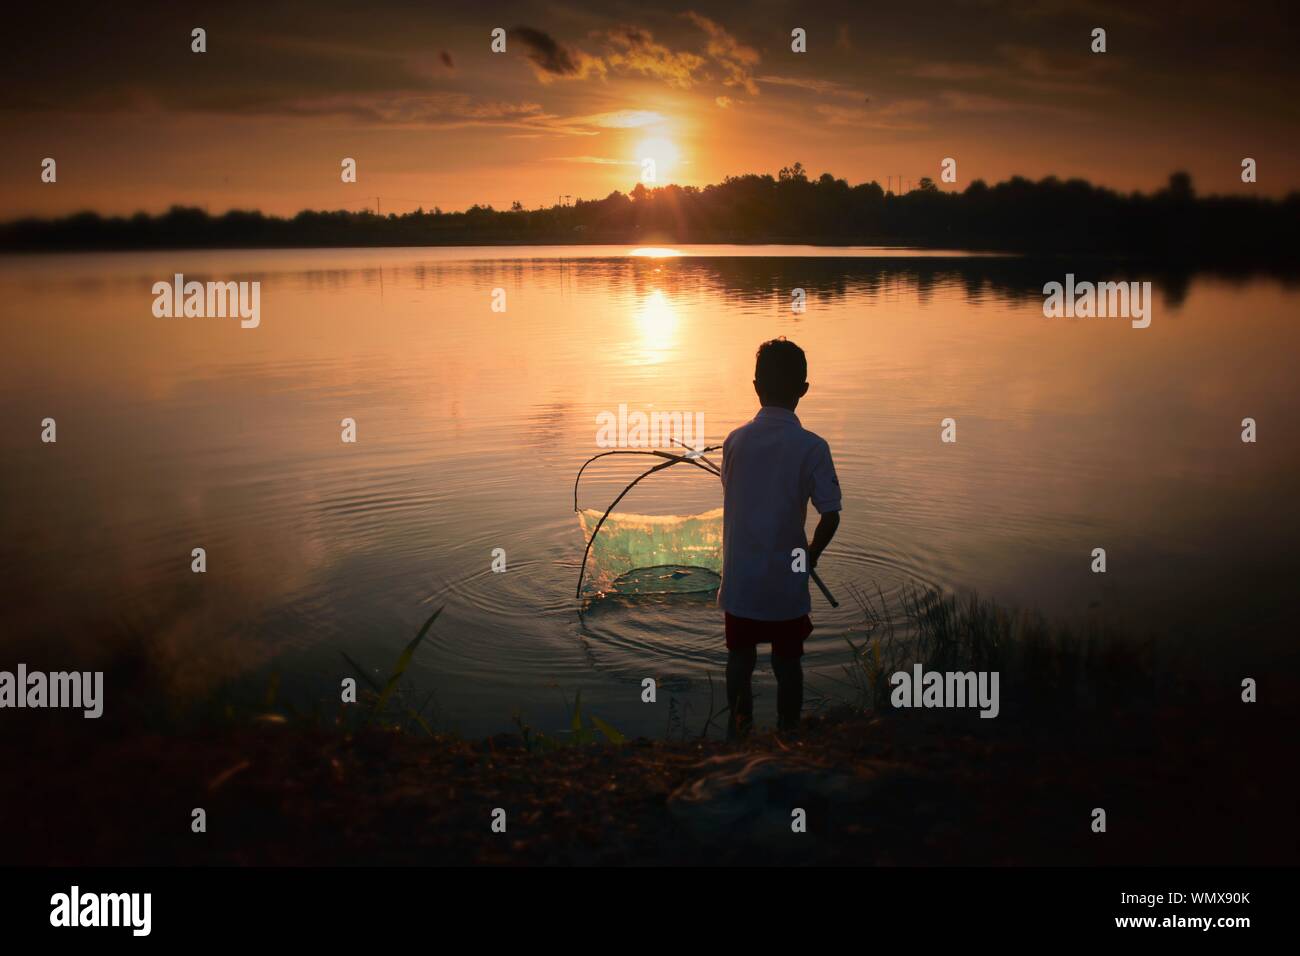 Vista trasera del Adolescente la pesca en Lakeshore durante la puesta de sol Foto de stock